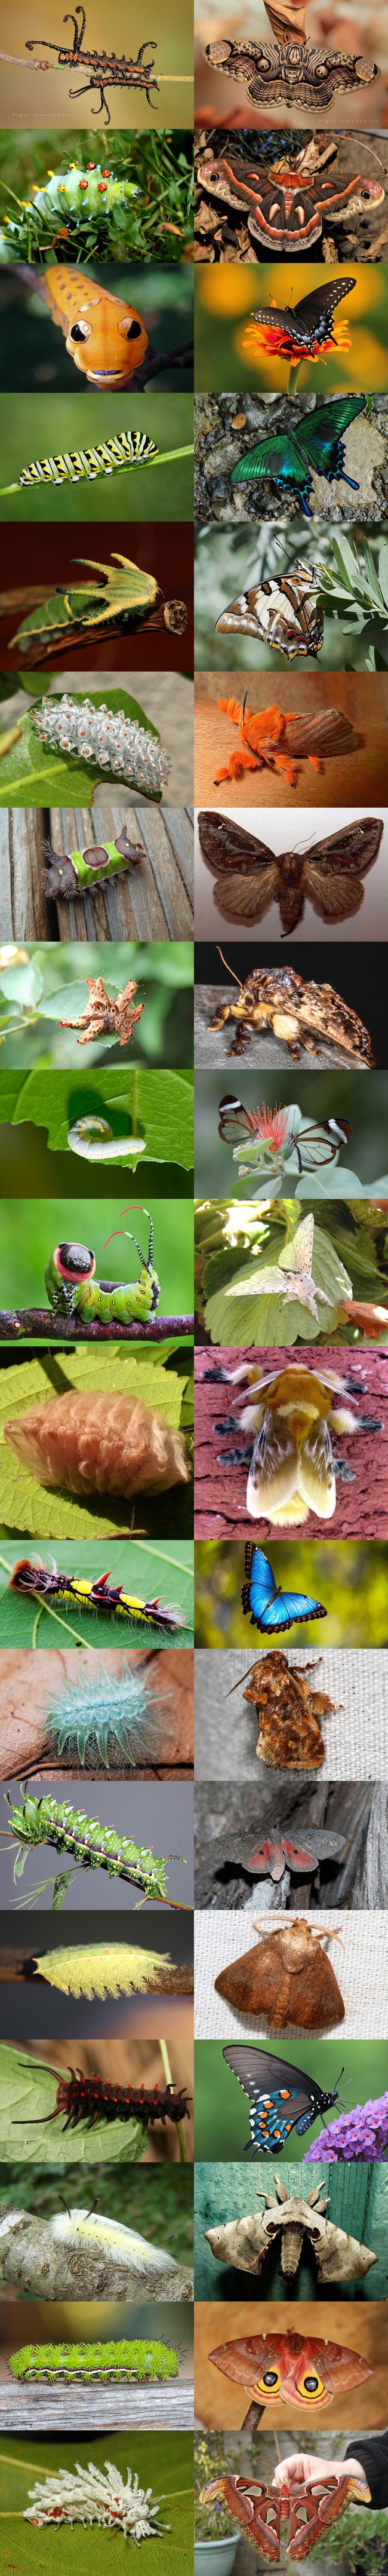 Ennen ja jälkeen kuvia - Ennen ja jälkeen kuvat toukista ja perhosista.